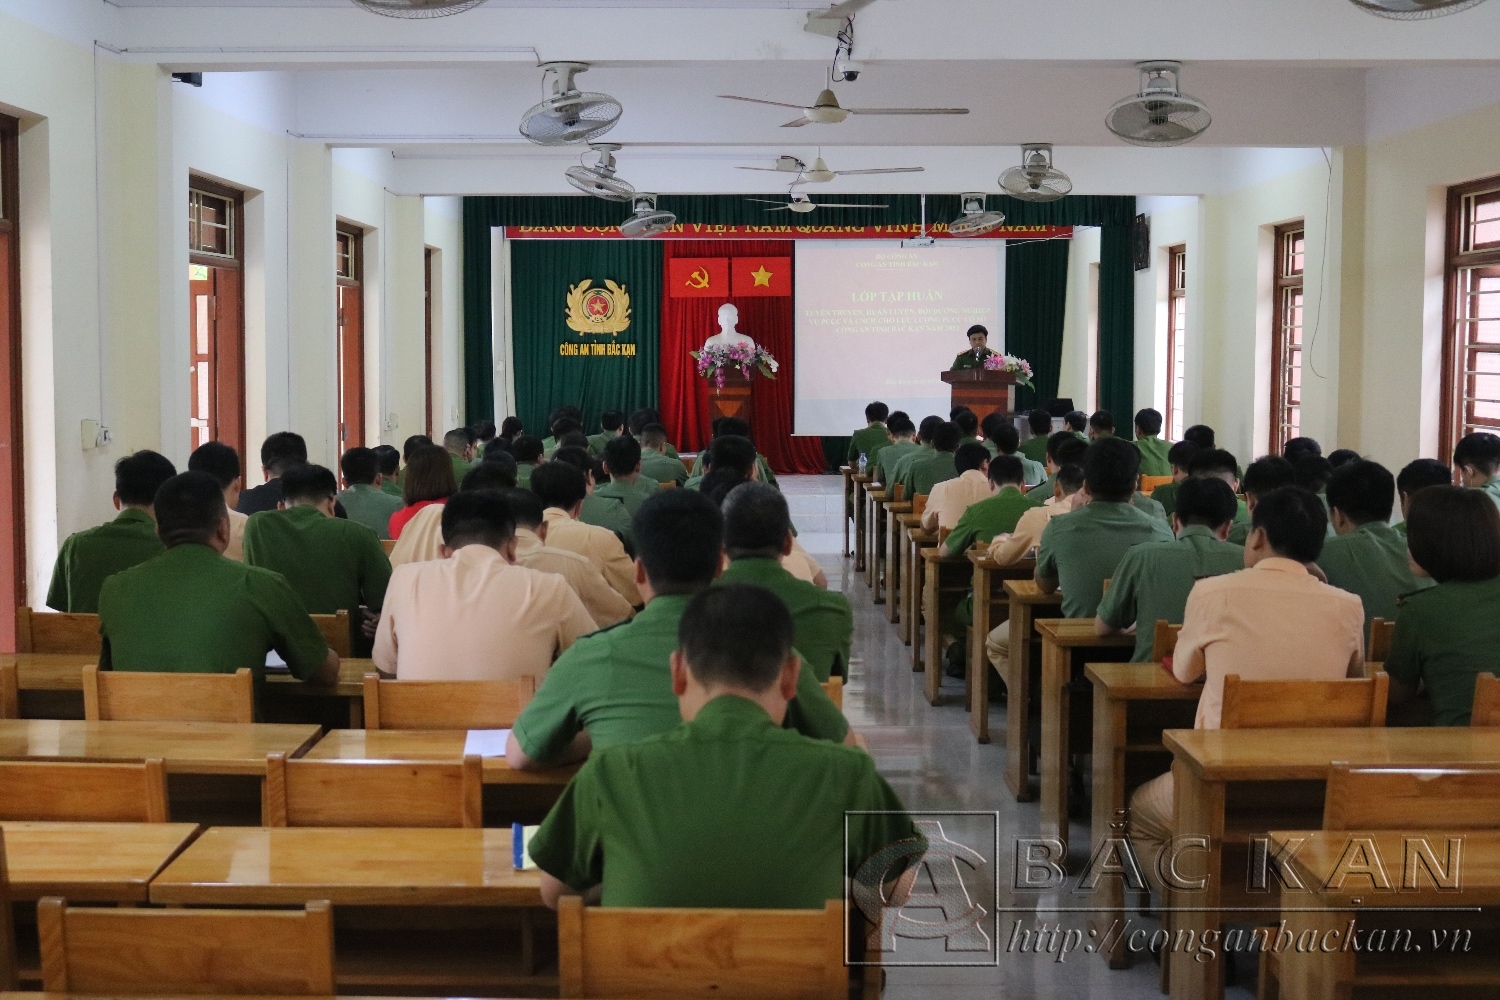 Đại tá Nguyễn Thanh Tuân, Phó Giám đốc Công an tỉnh phát biểu khai mạc lớp tập huấn.